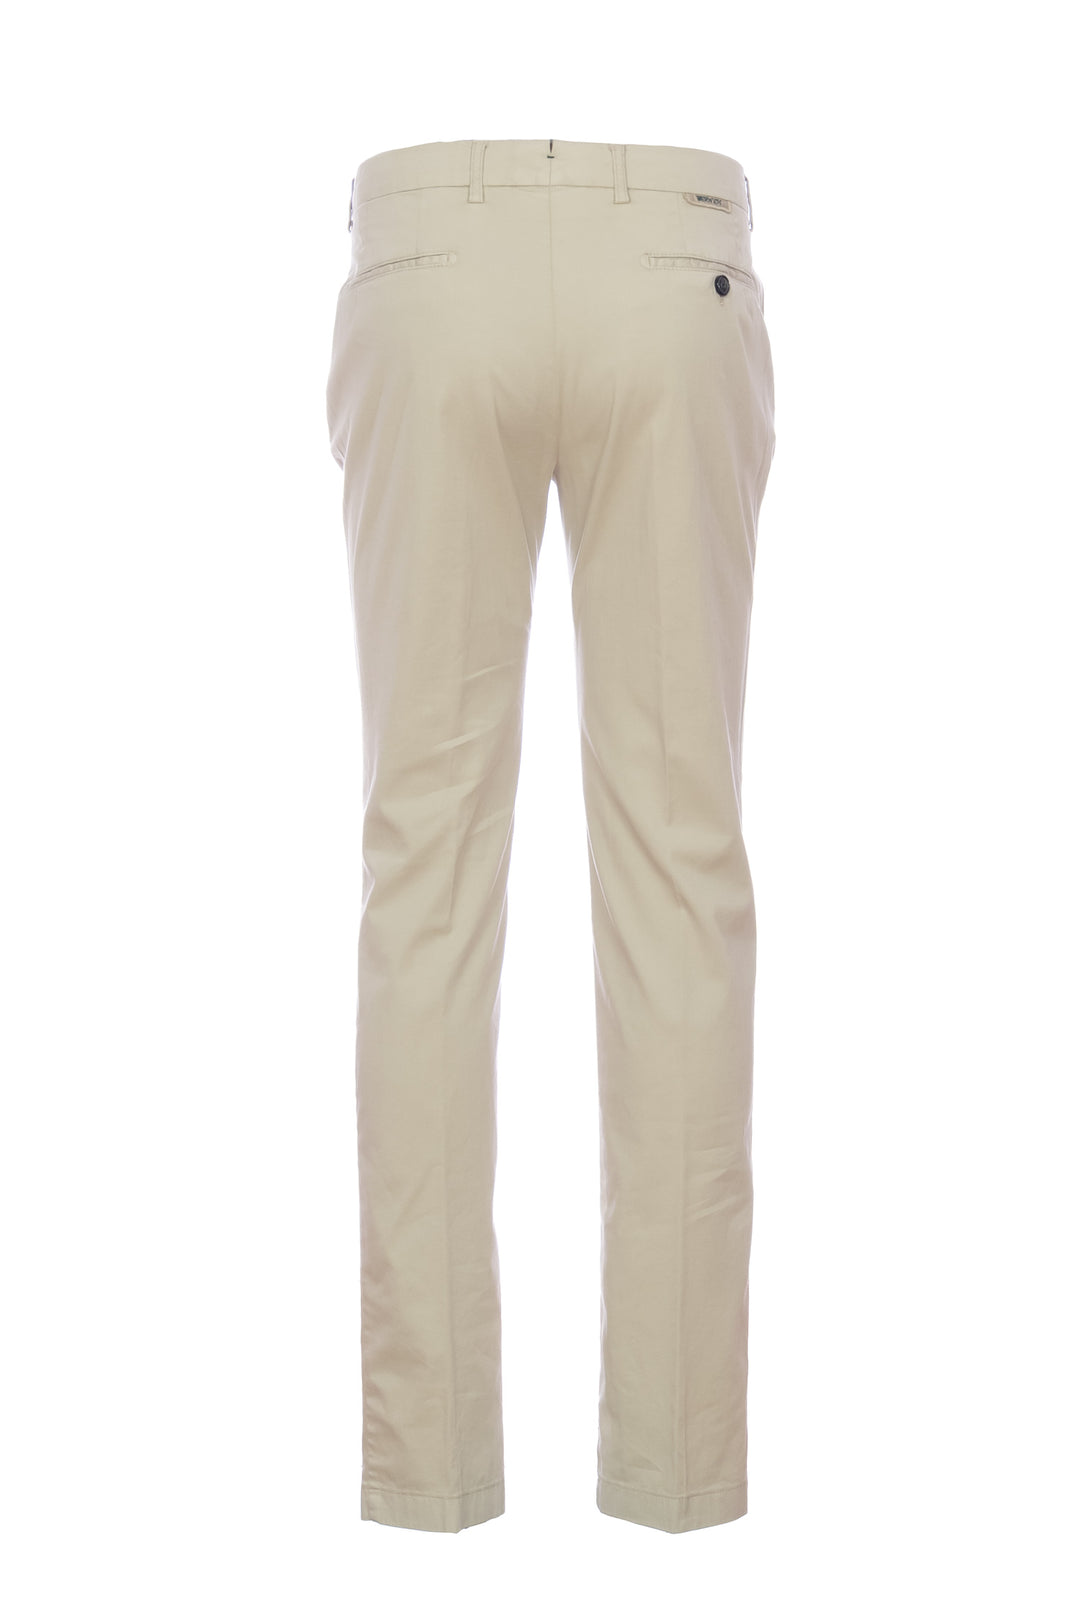 BERWICH Pantalone “MORELLO” beige in misto cotone elasticizzato e seta - Mancinelli 1954